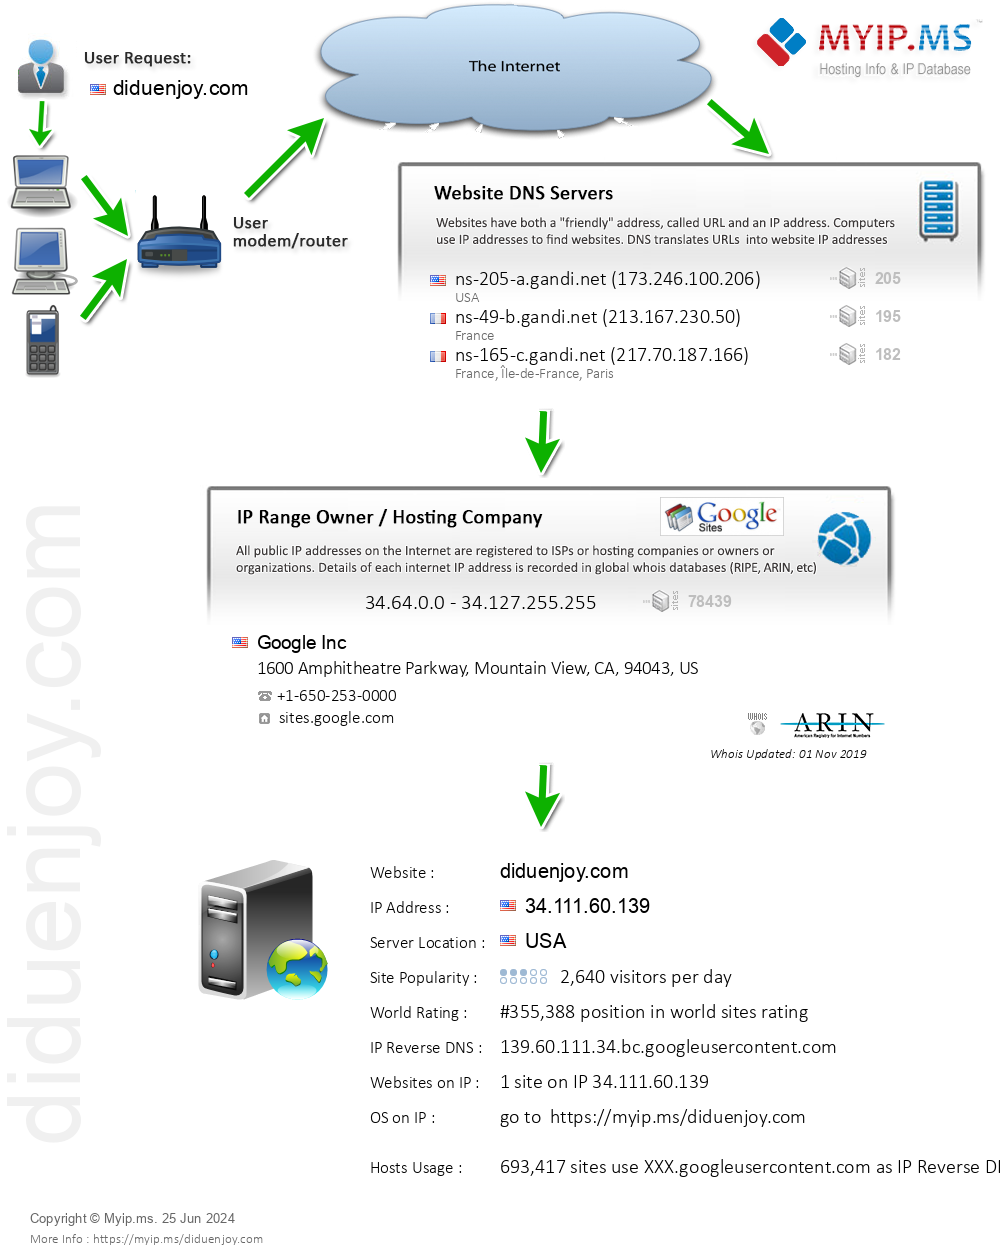 Diduenjoy.com - Website Hosting Visual IP Diagram